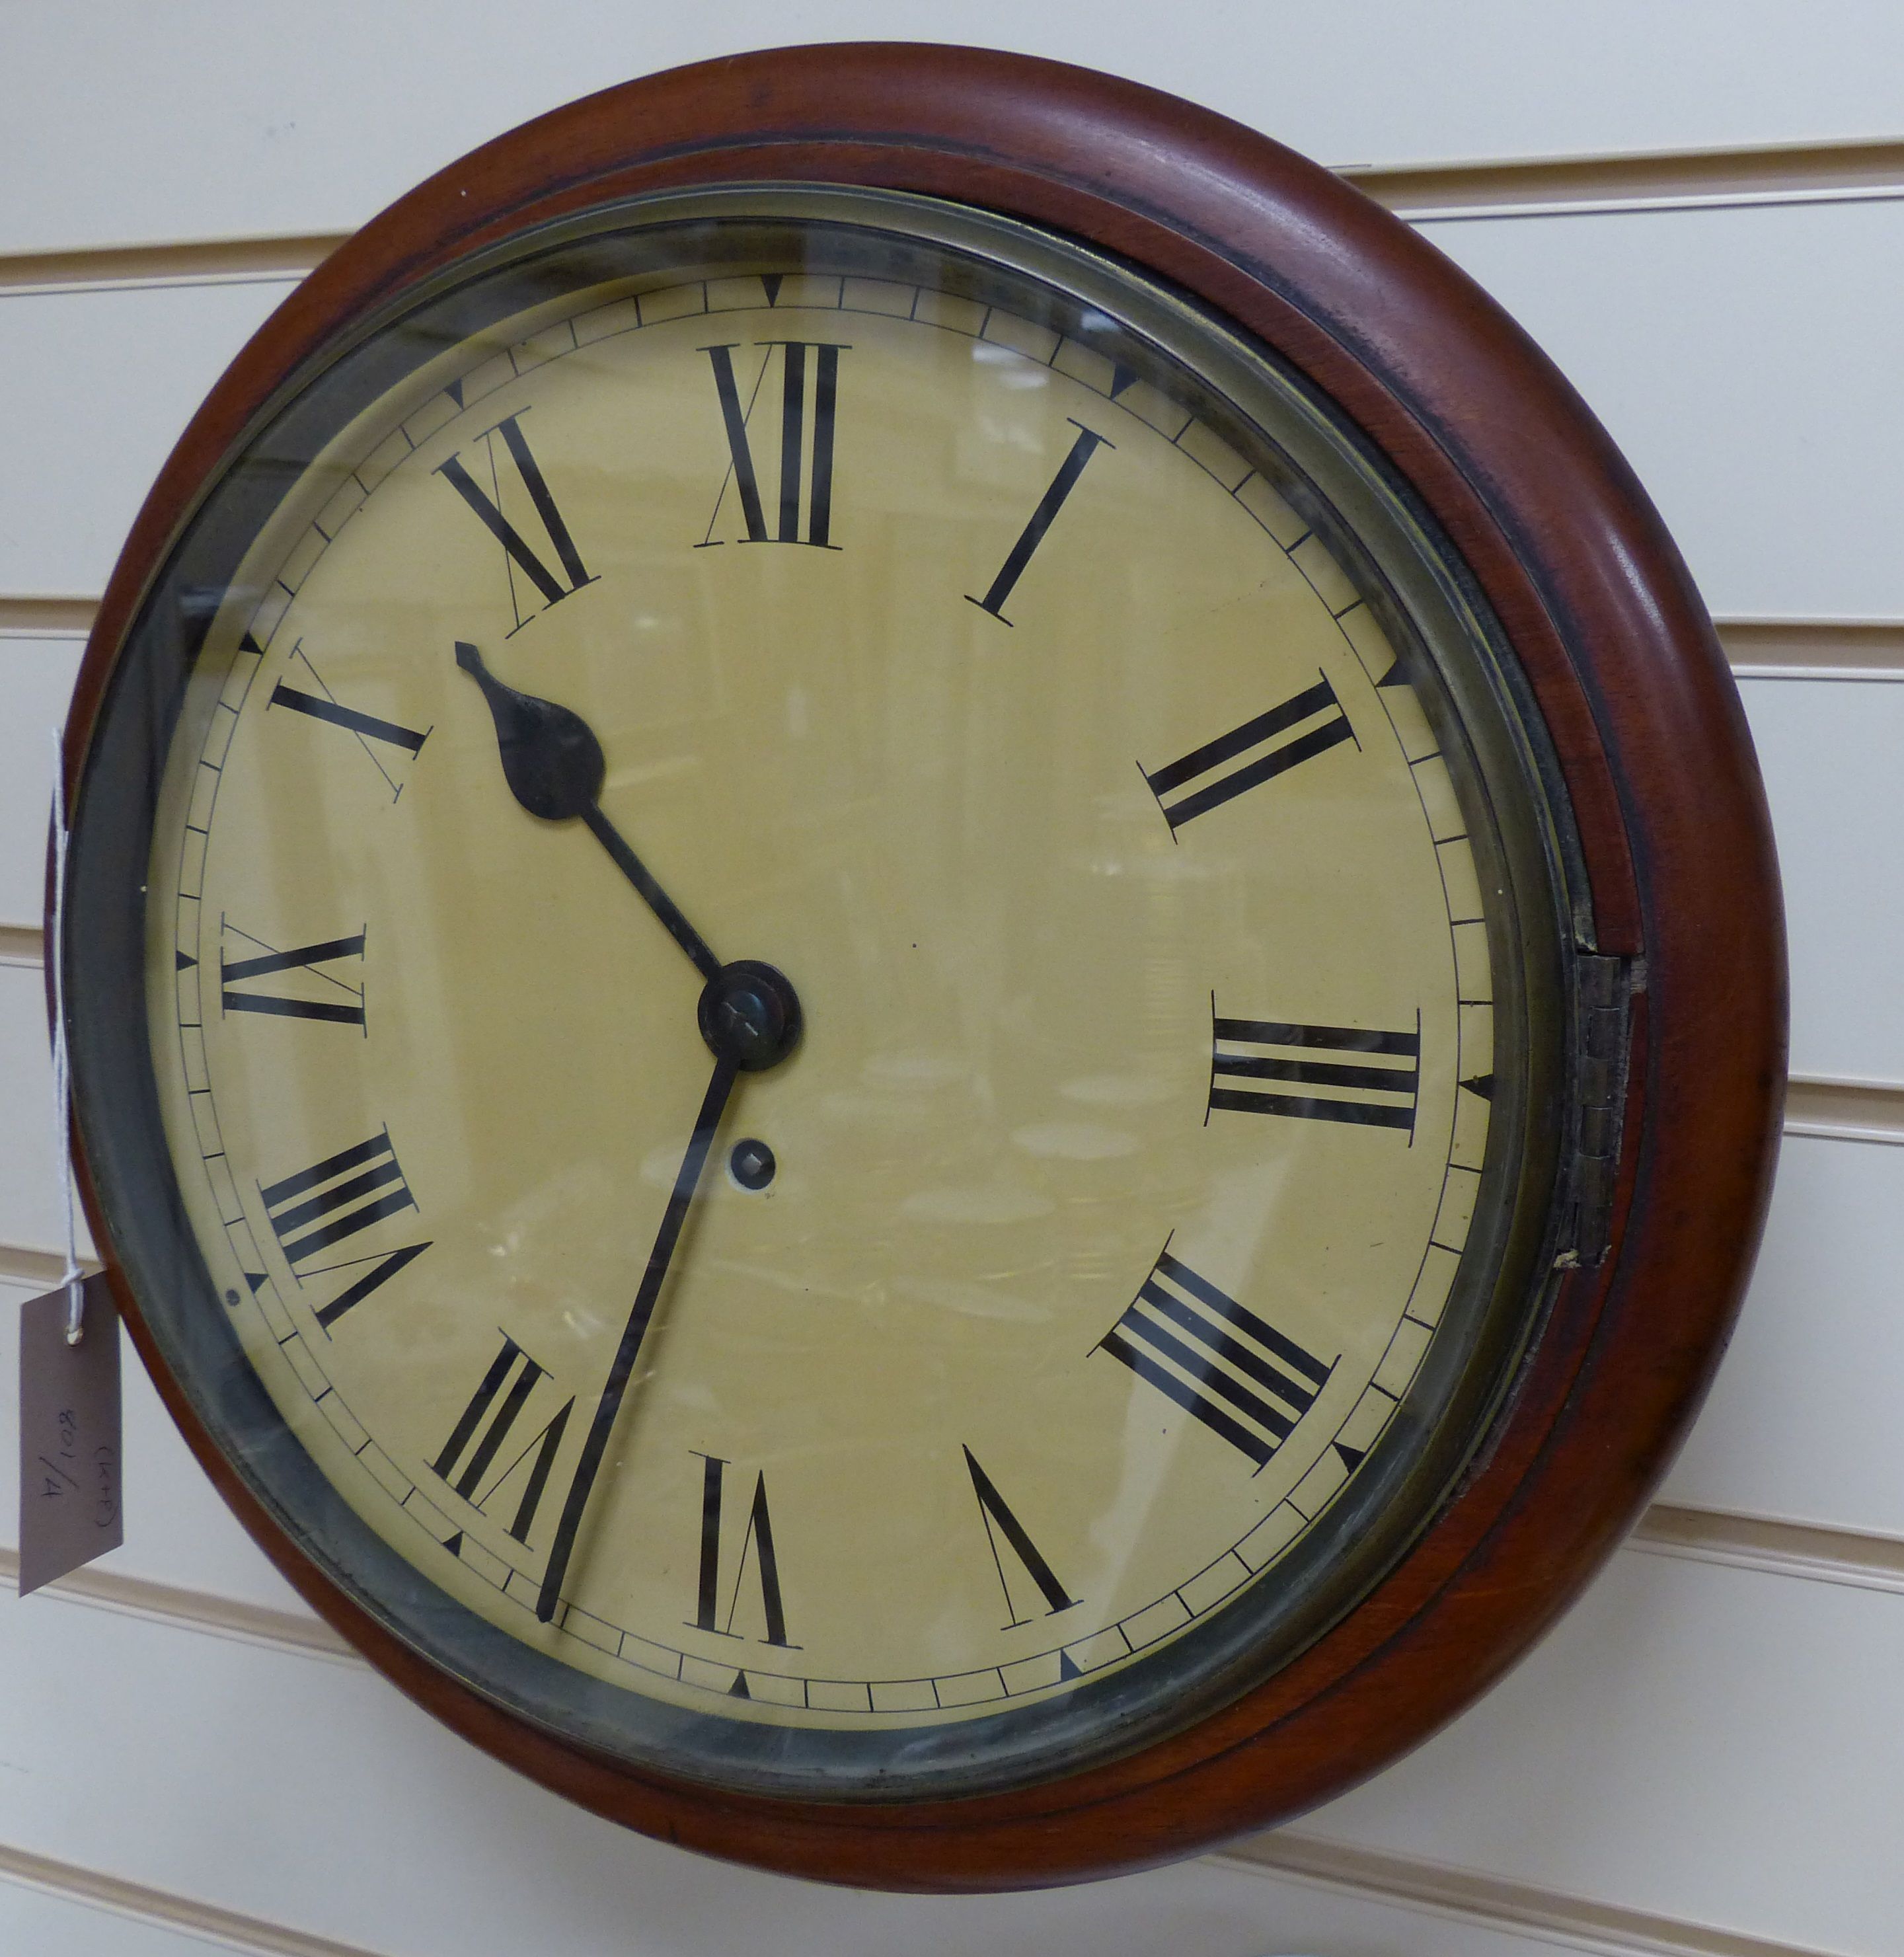 A late Victorian mahogany dial clock (key and pendulum), diameter 38cm